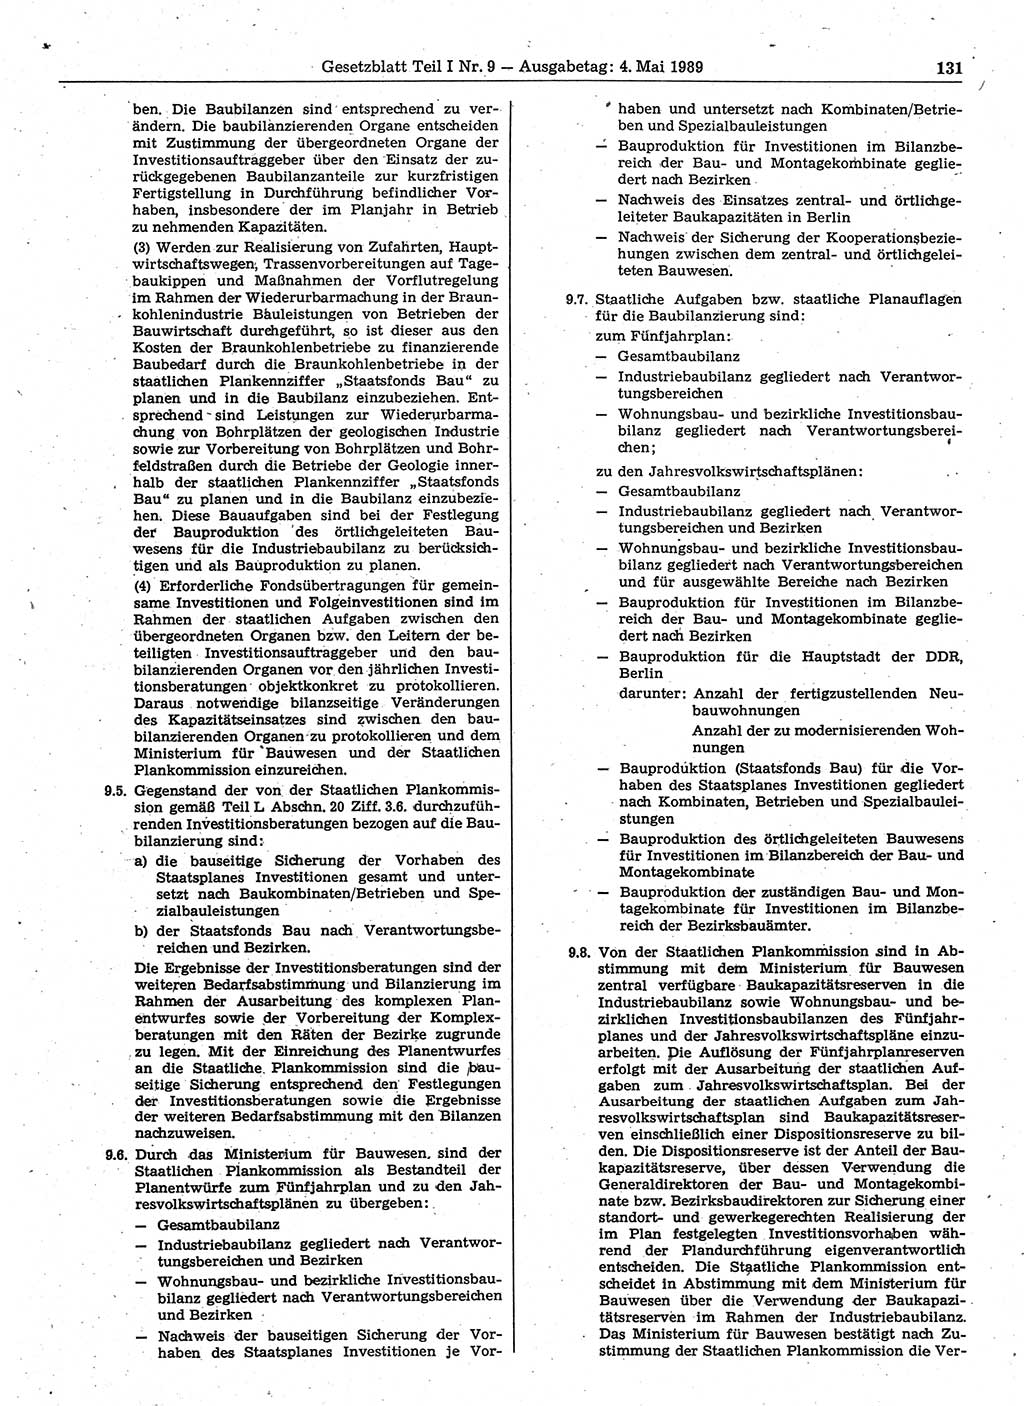 Gesetzblatt (GBl.) der Deutschen Demokratischen Republik (DDR) Teil Ⅰ 1989, Seite 131 (GBl. DDR Ⅰ 1989, S. 131)